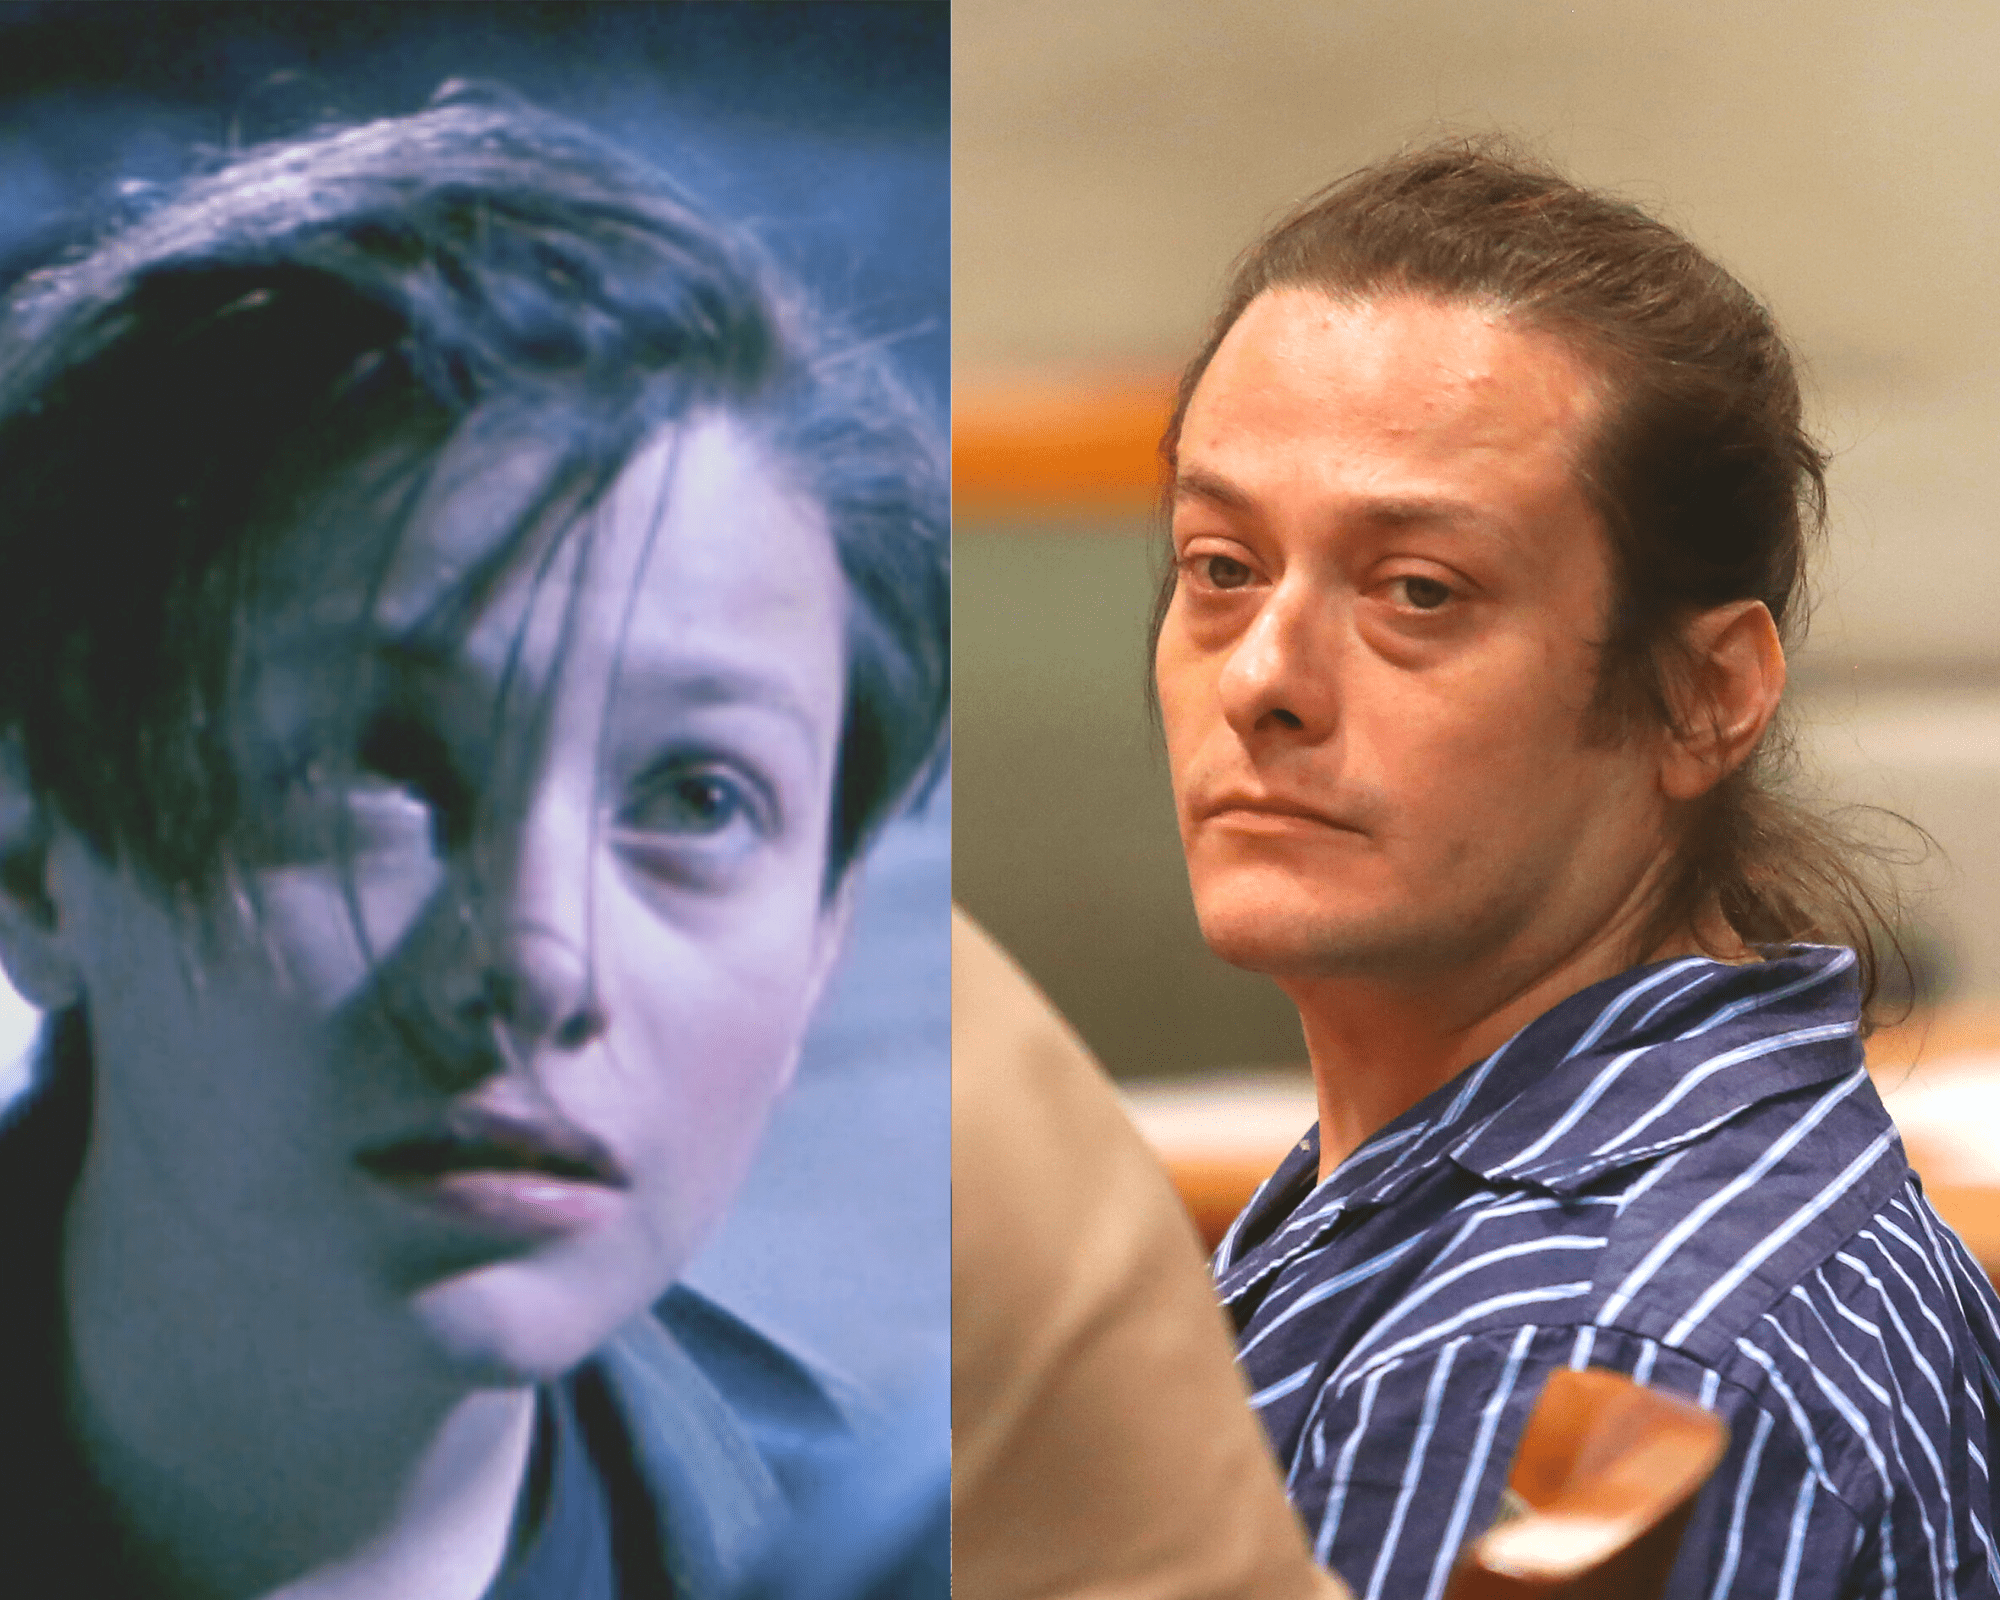 Edward Furlong (dans le rôle de John Connor) dans "Terminator 2", juillet 1991 | Edward Furlong dans un tribunal de Los Angeles le 1er juillet 2013 | Source : Getty Images